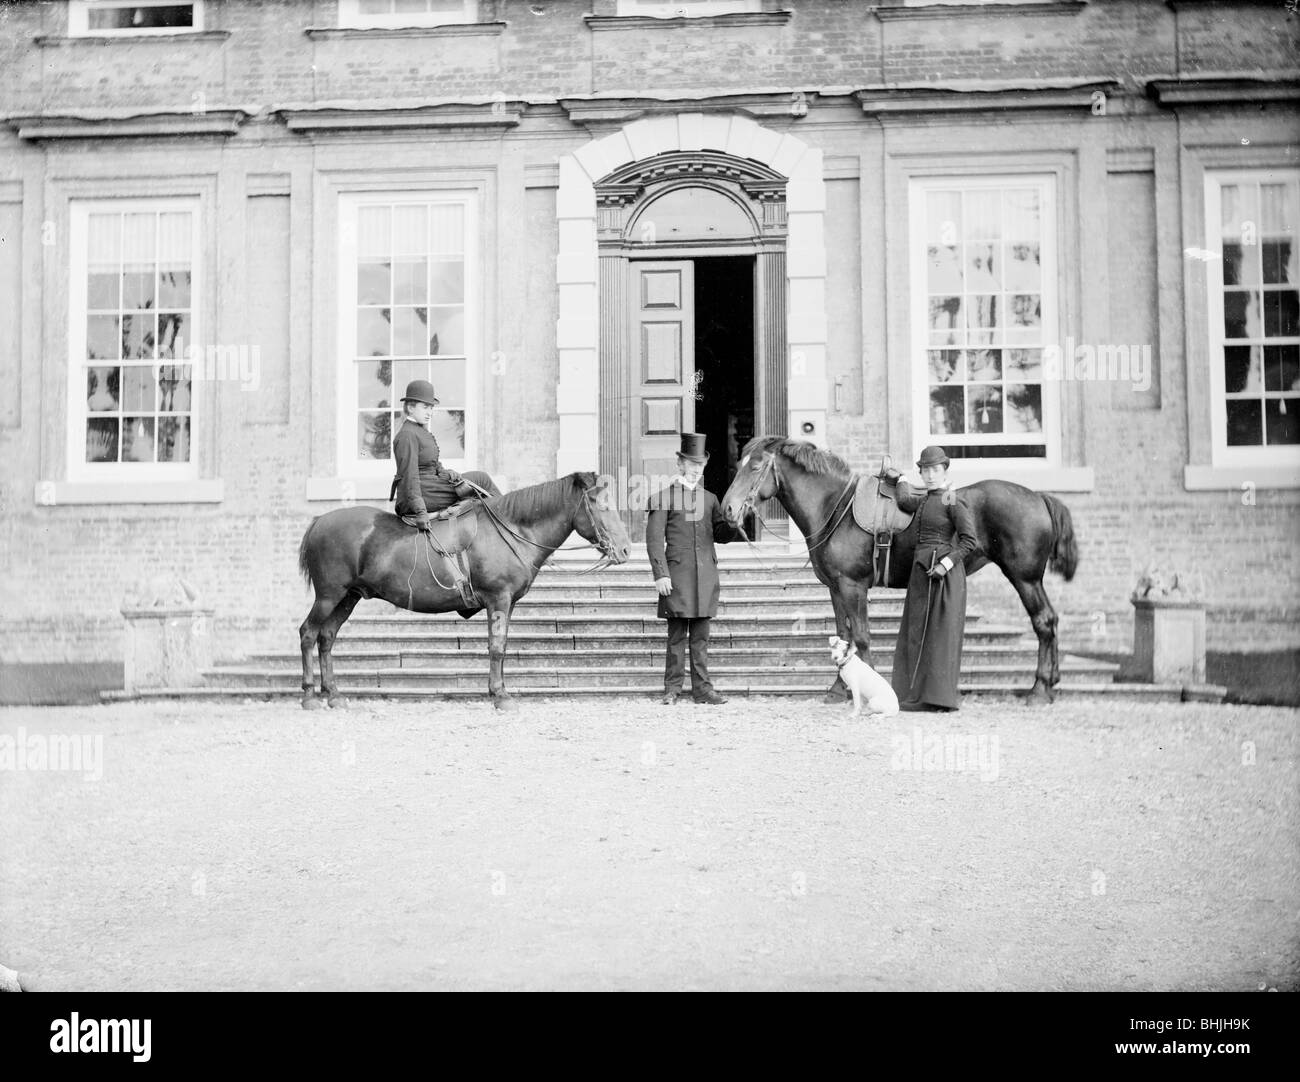 Manor House, Bradenham, Buckinghamshire, c1860-c1922. Artist: Henry Taunt Stock Photo